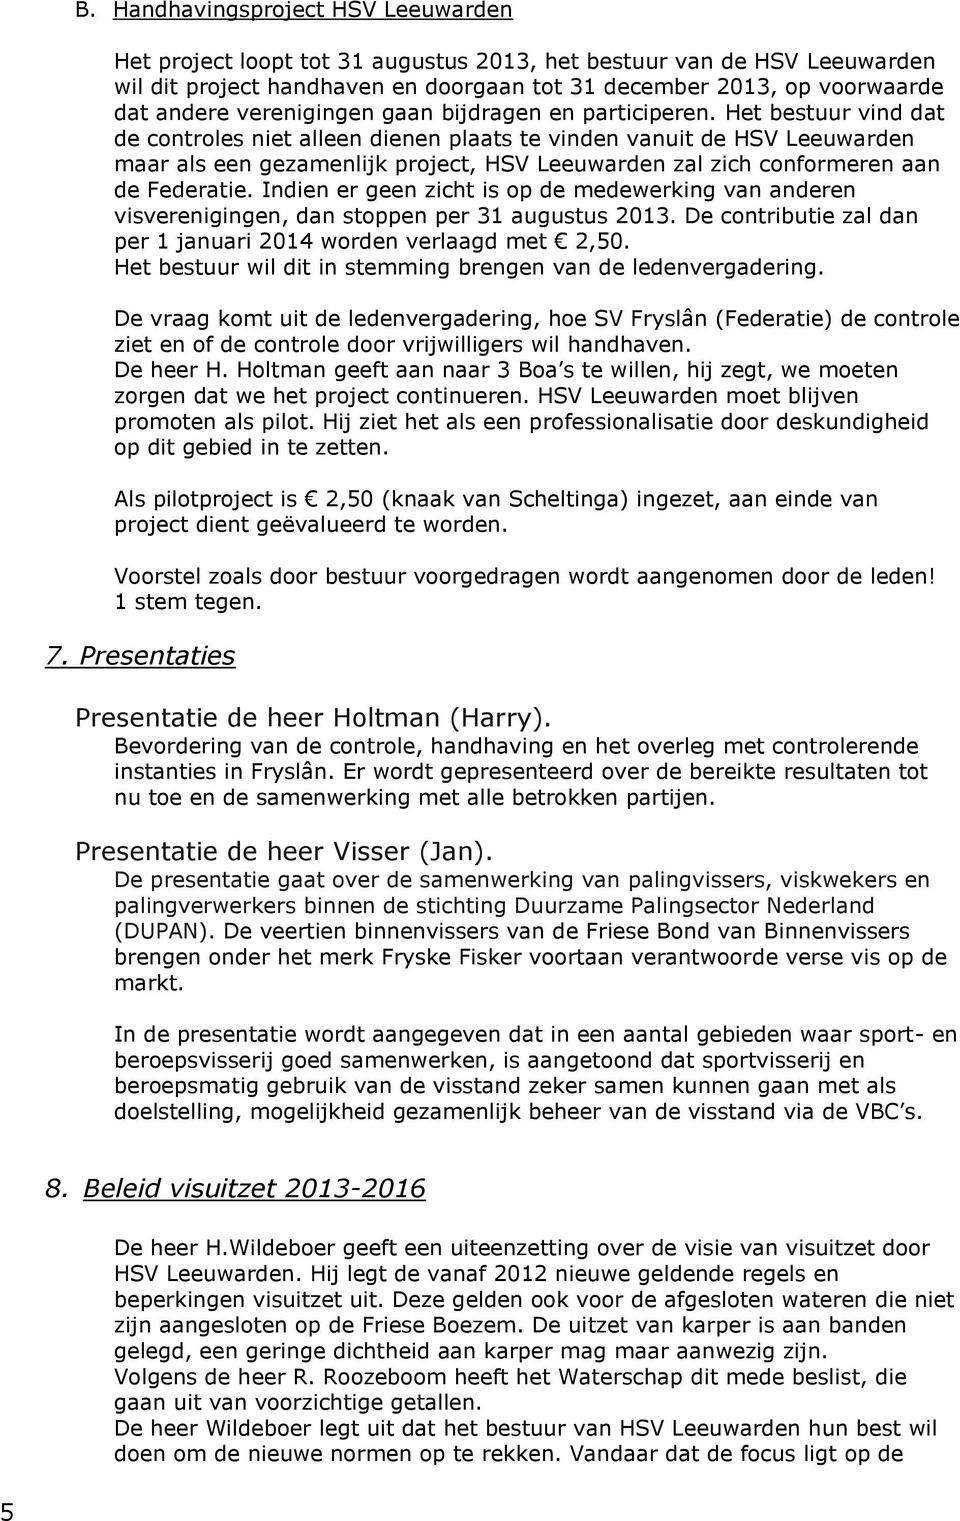 Het bestuur vind dat de controles niet alleen dienen plaats te vinden vanuit de HSV Leeuwarden maar als een gezamenlijk project, HSV Leeuwarden zal zich conformeren aan de Federatie.